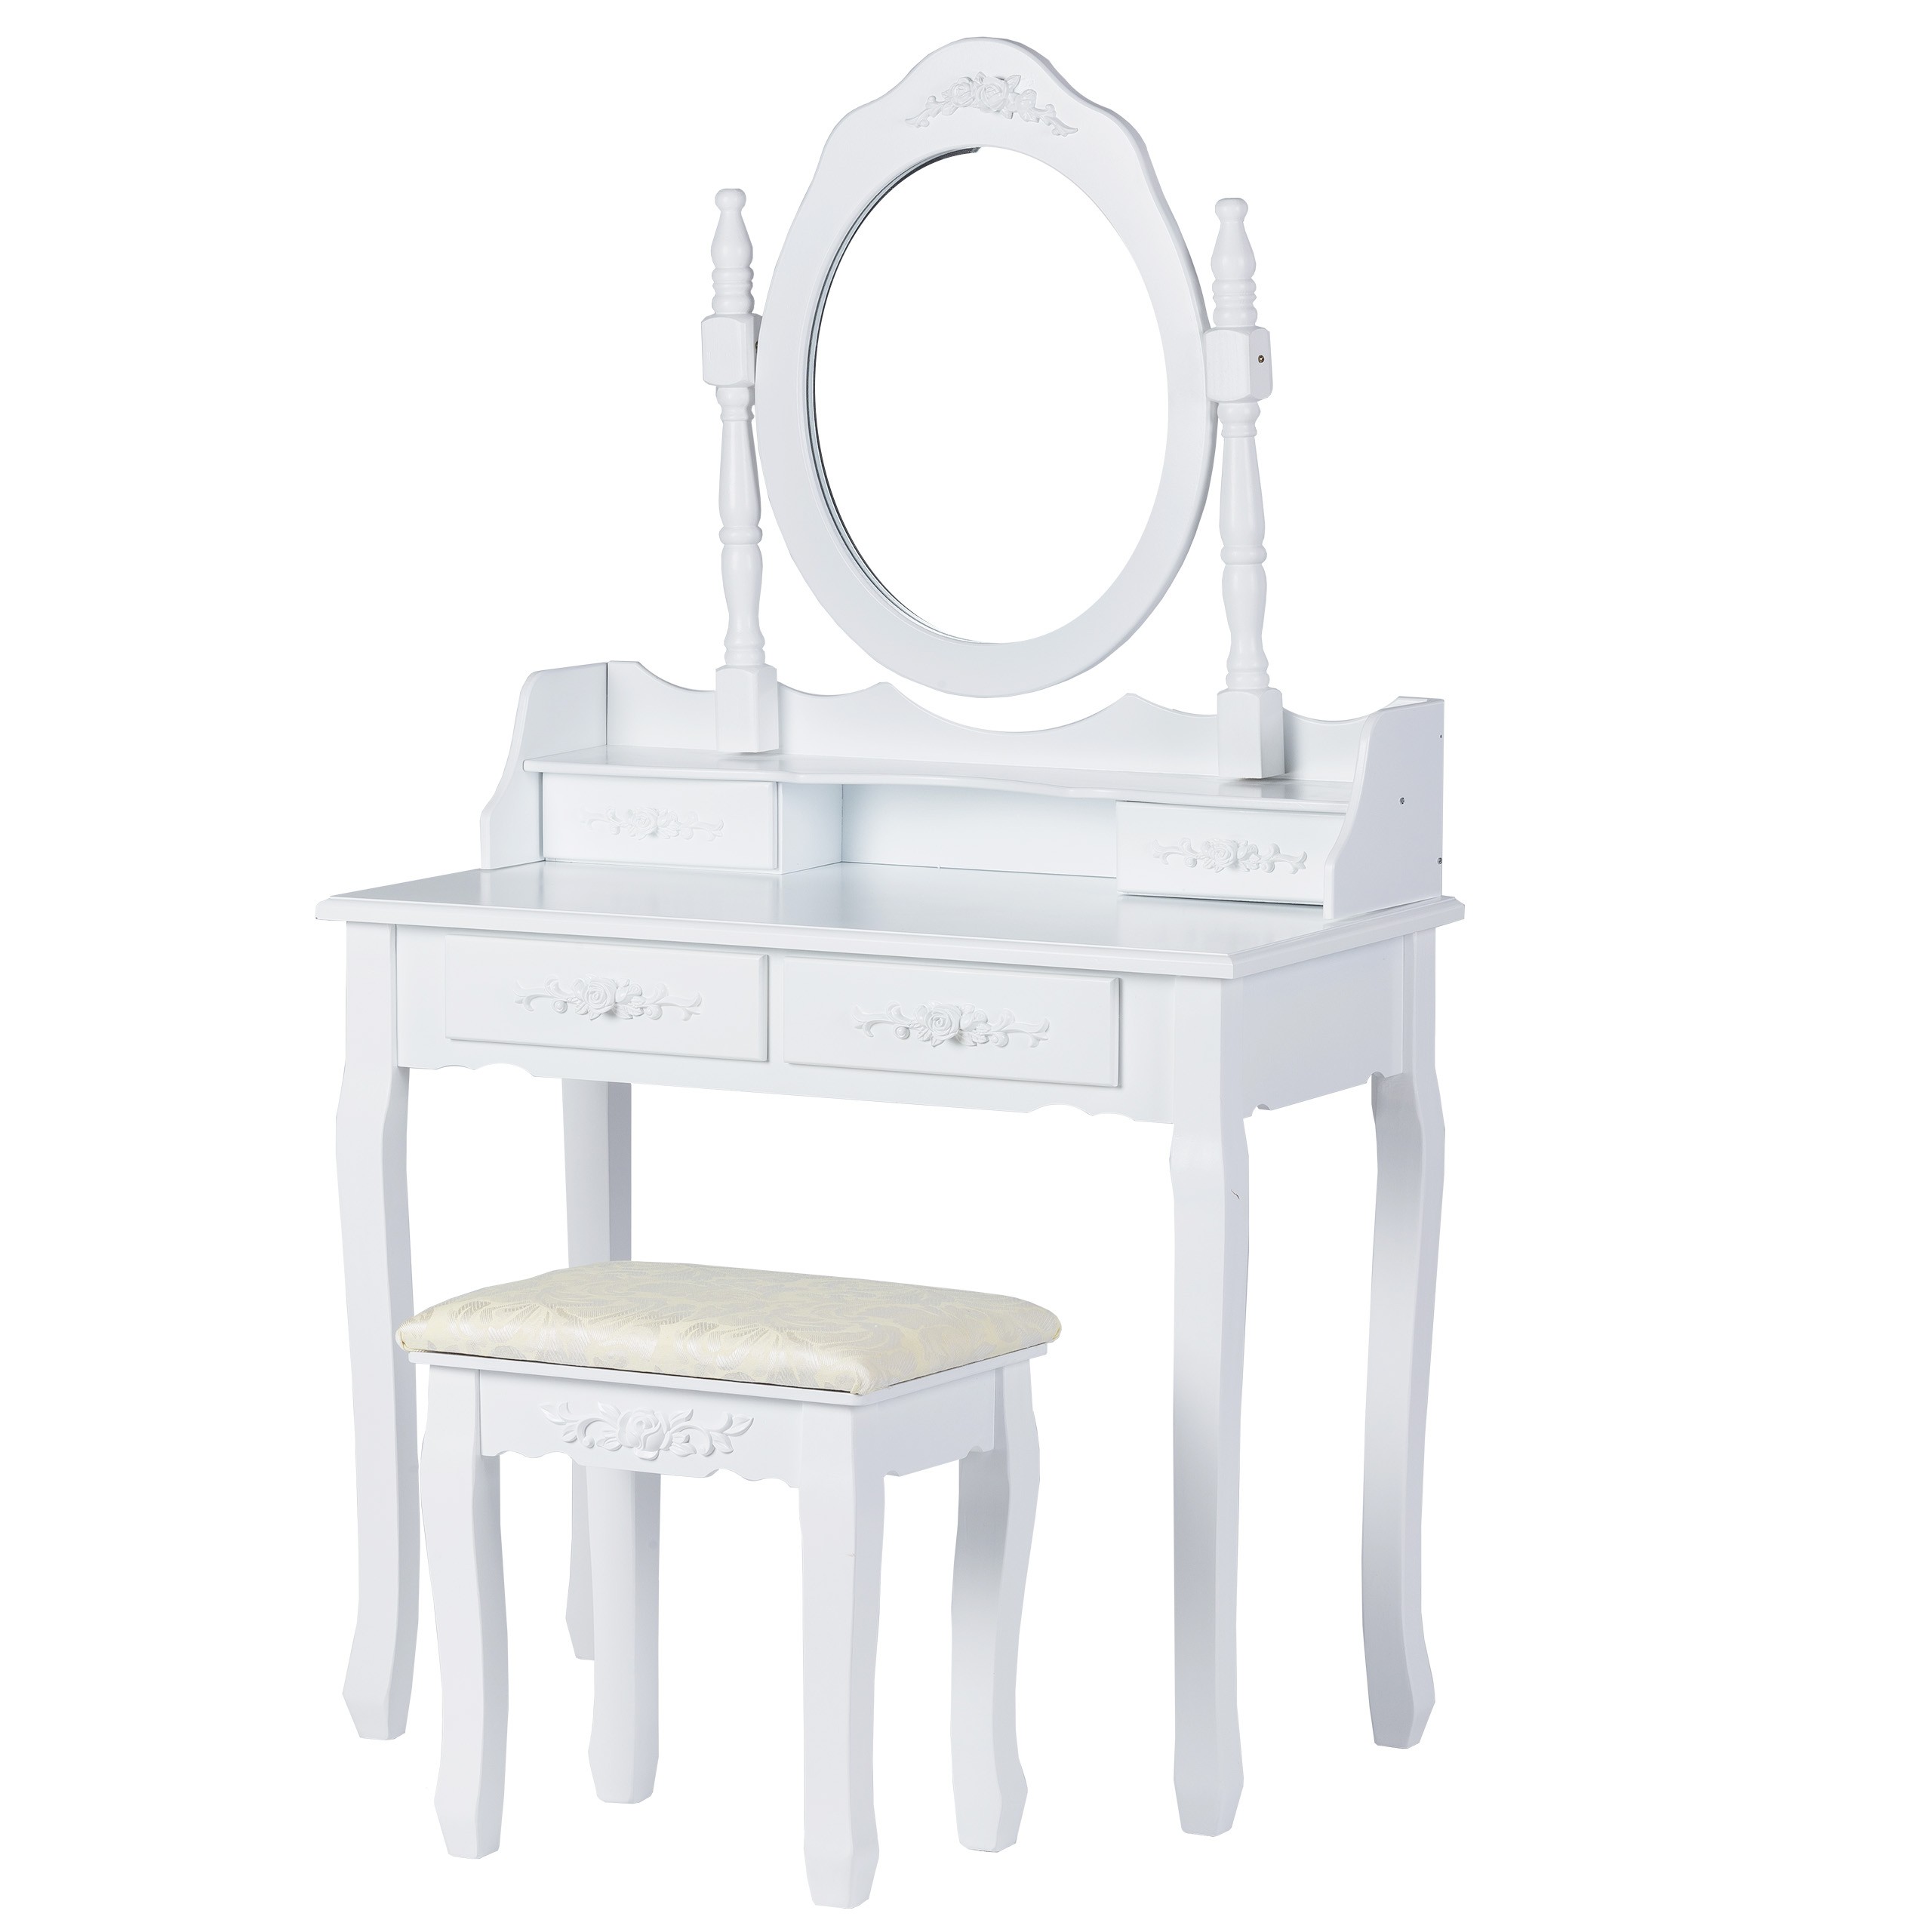 O masă de toaletă cosmetică, cu o oglindă mare și un taburet